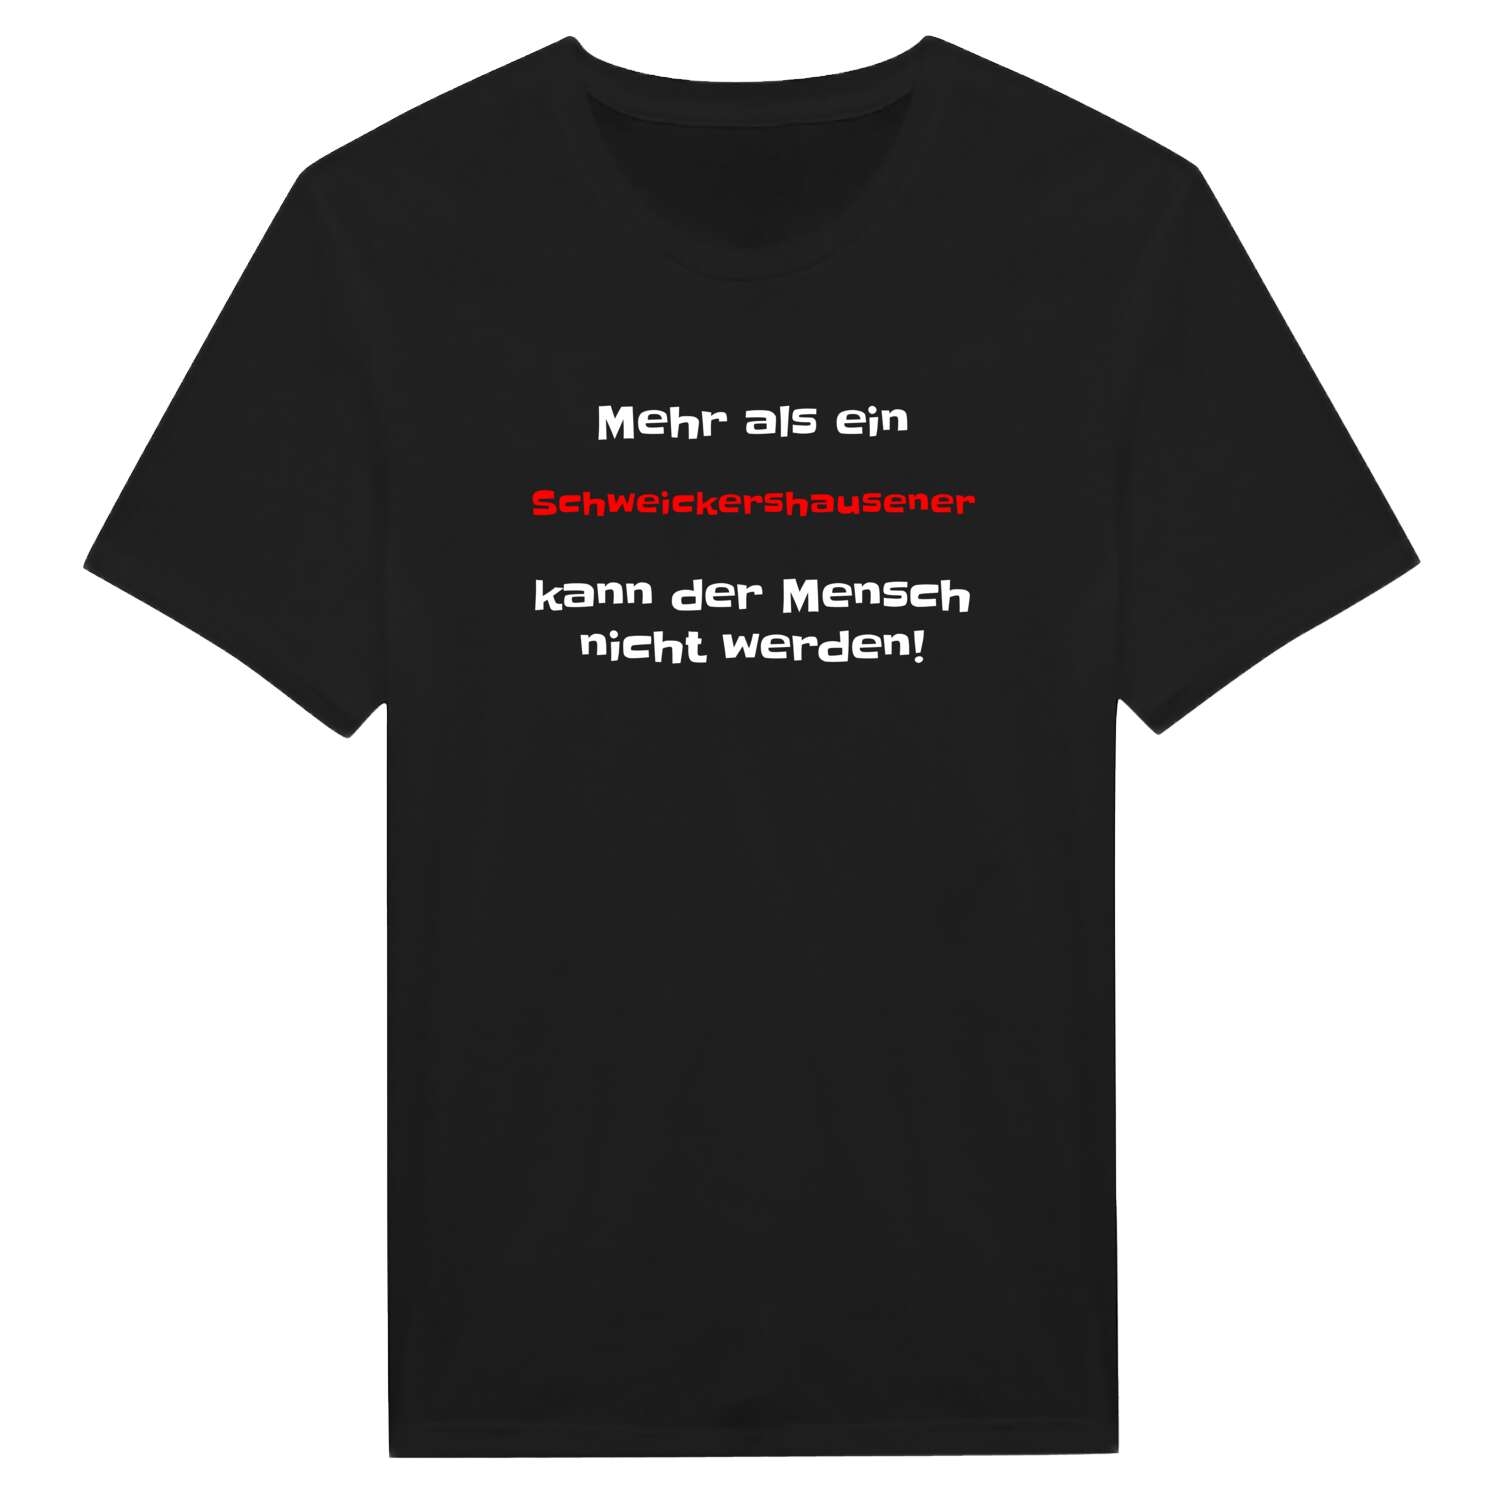 Schweickershausen T-Shirt »Mehr als ein«